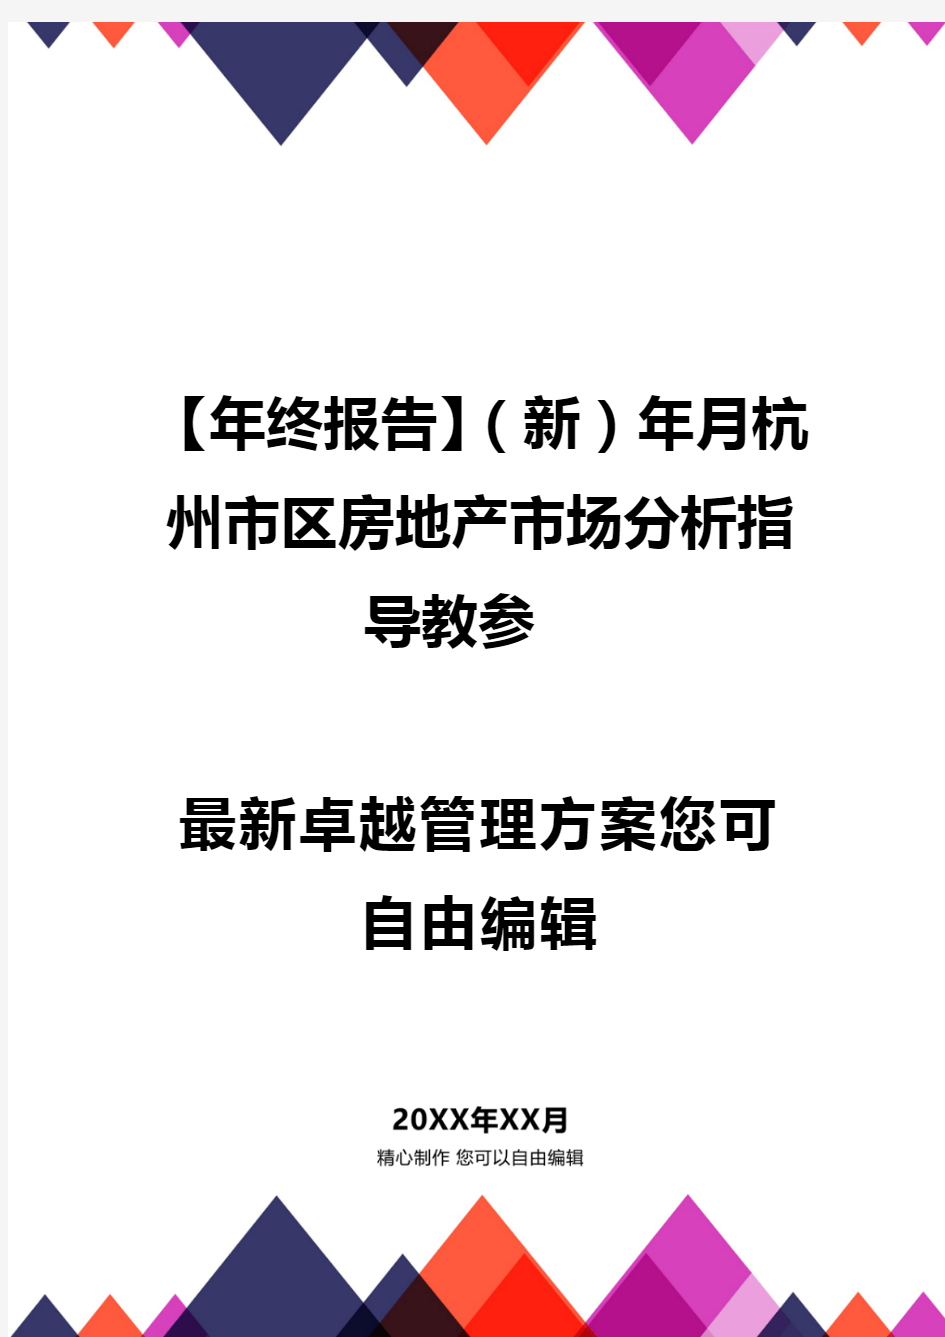 【年终报告】(新)年月杭州市区房地产市场分析指导教参